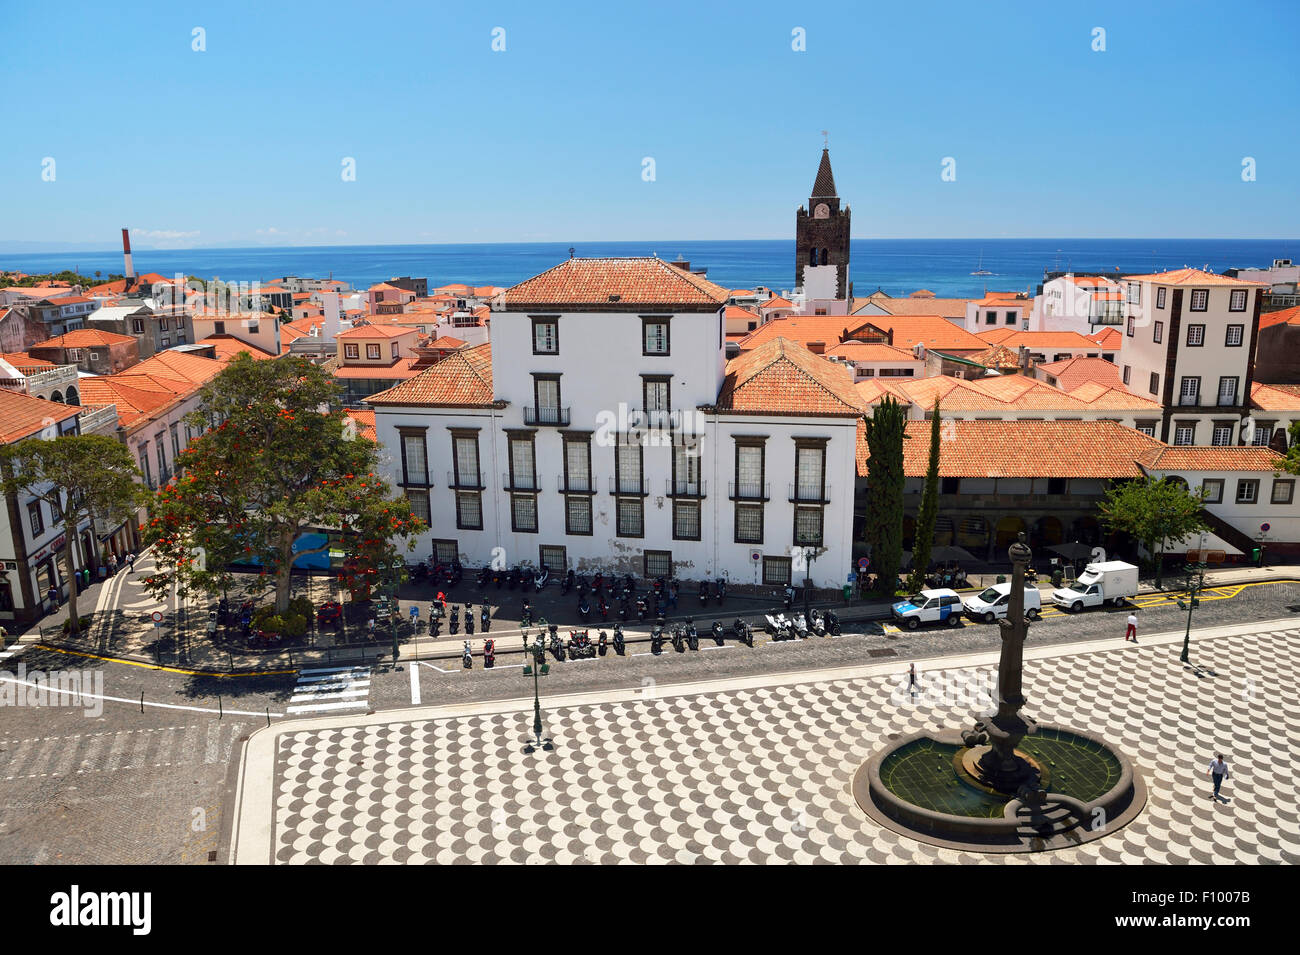 View of the town hall square and the Sé Catedral de Nossa Senhora da Assunção, cathedral, Funchal, Madeira, Portugal Stock Photo